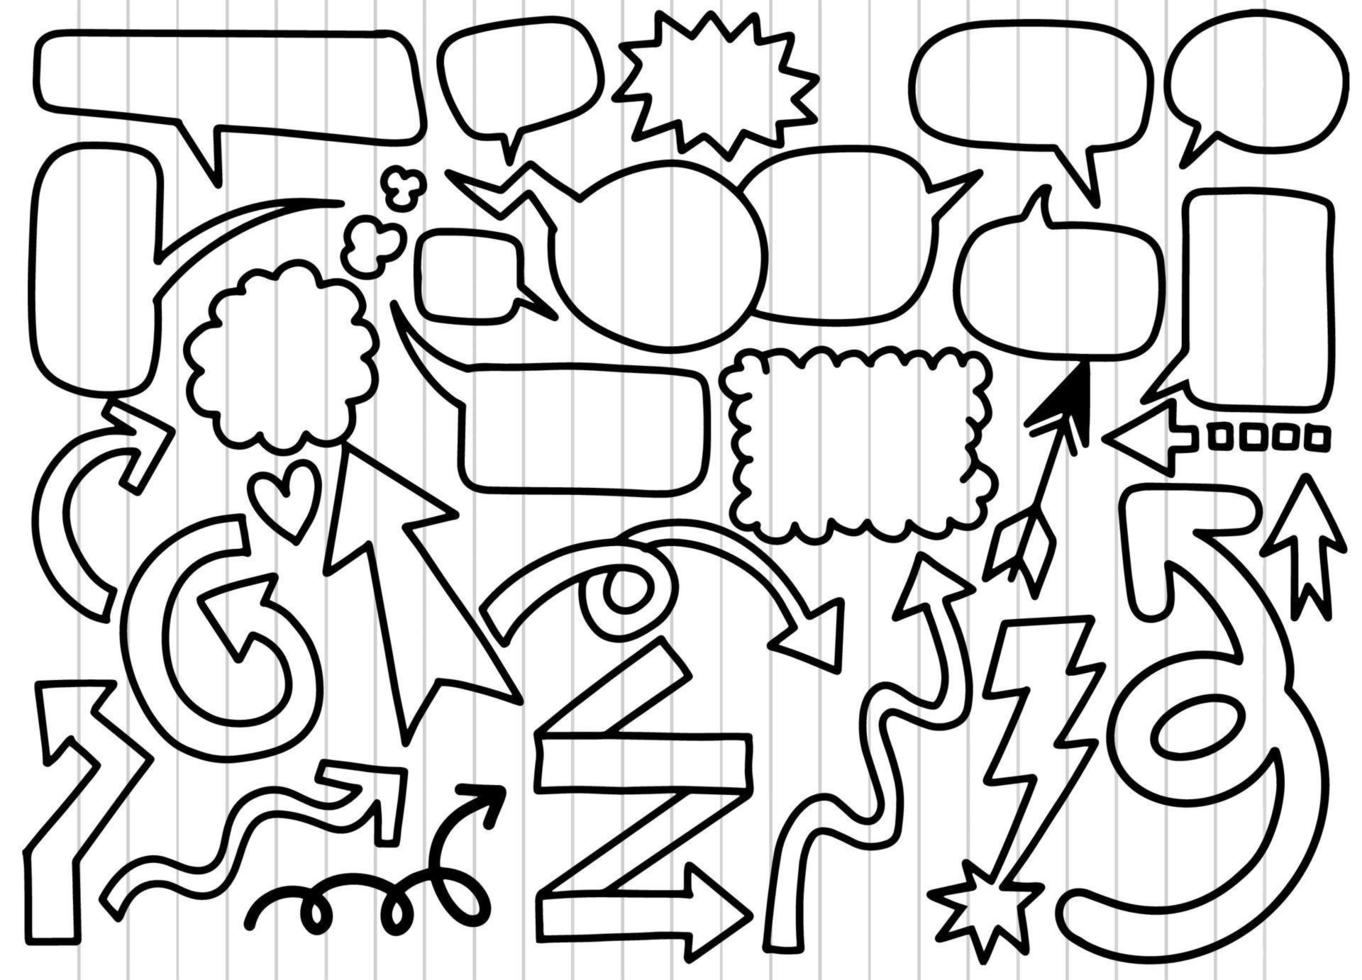 conjunto dibujado a mano de diferentes flechas de arena de burbujas de habla, pegatinas de burbujas y conjunto de vectores de flecha, conjunto retro de cómics y vectores de dibujos animados de burbujas, cada uno en una capa separada.